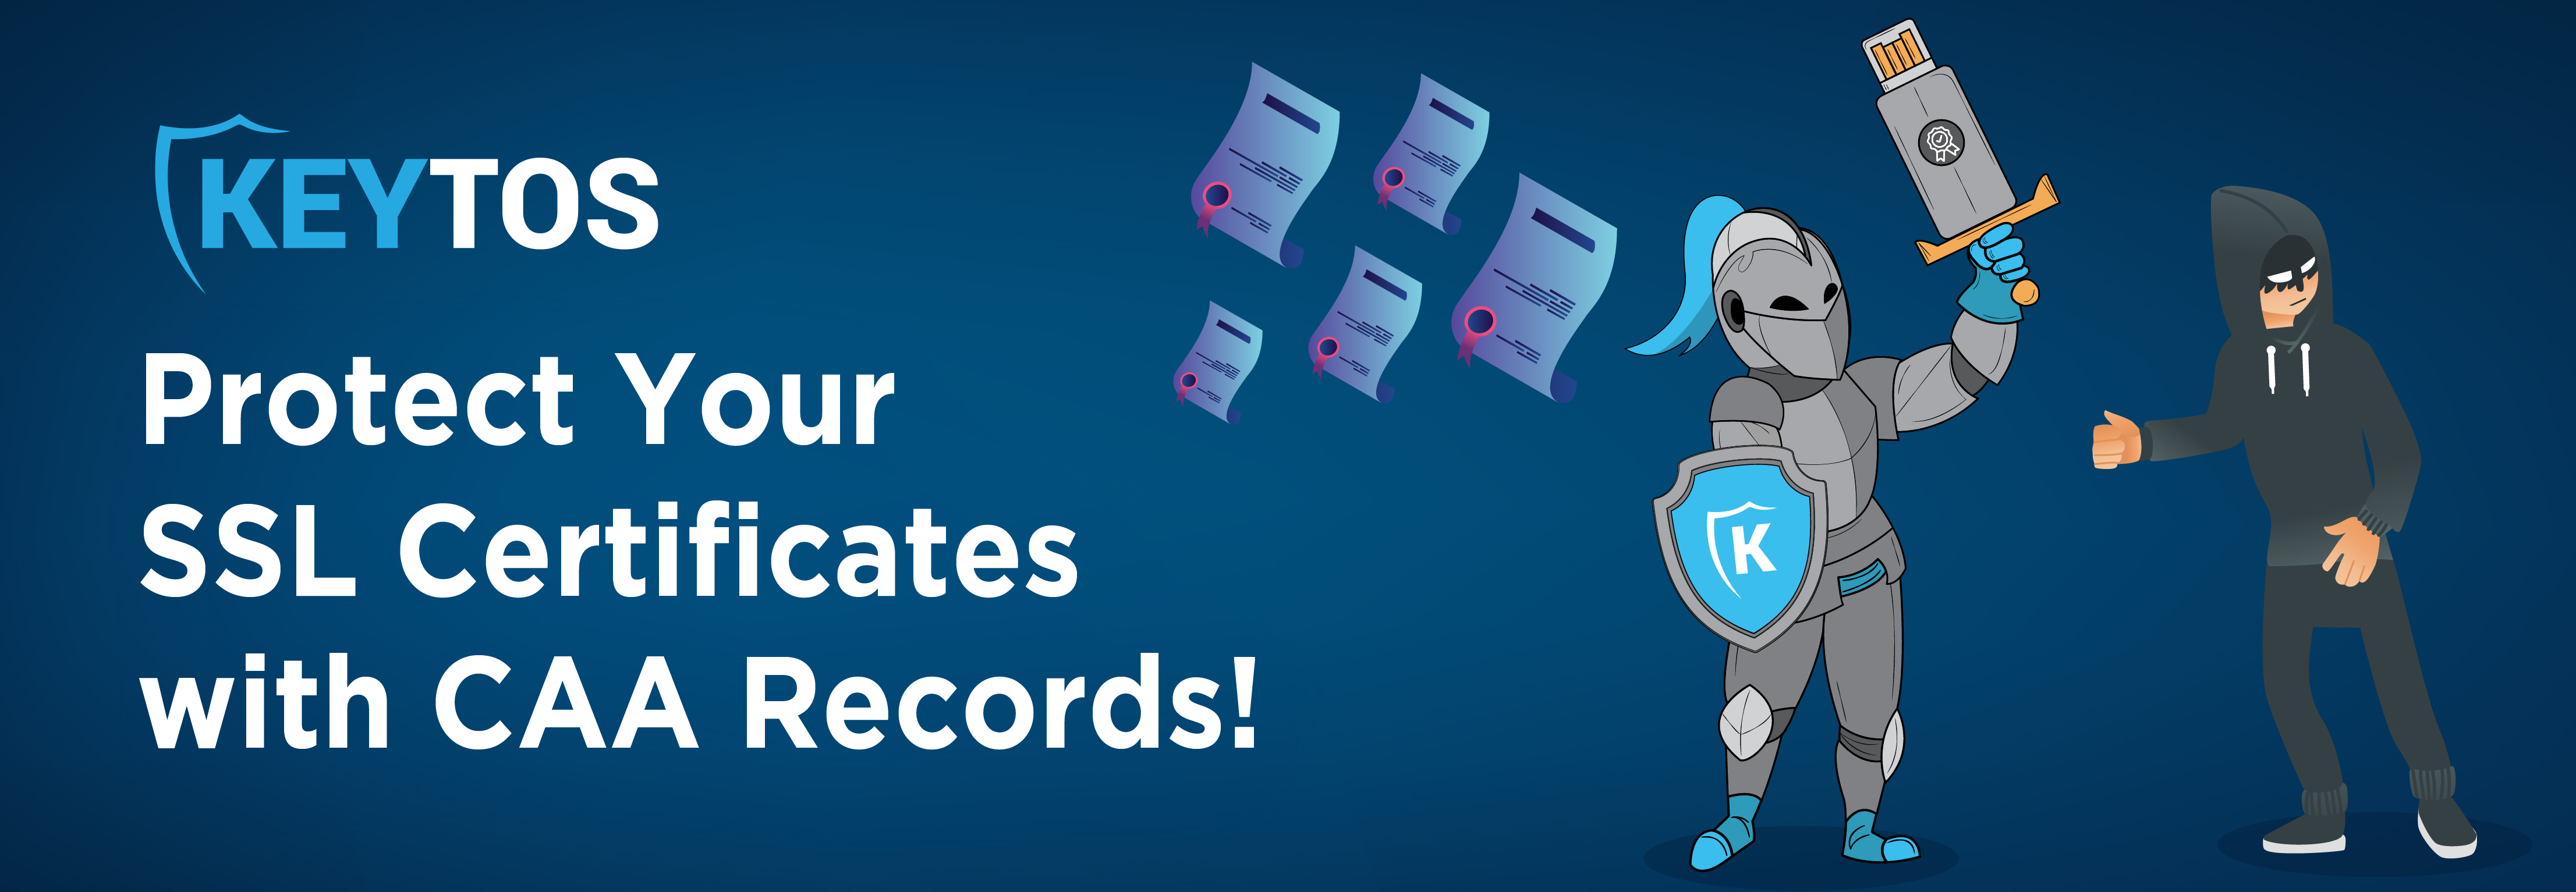 Utilice registros CAA para proteger sus certificados SSL